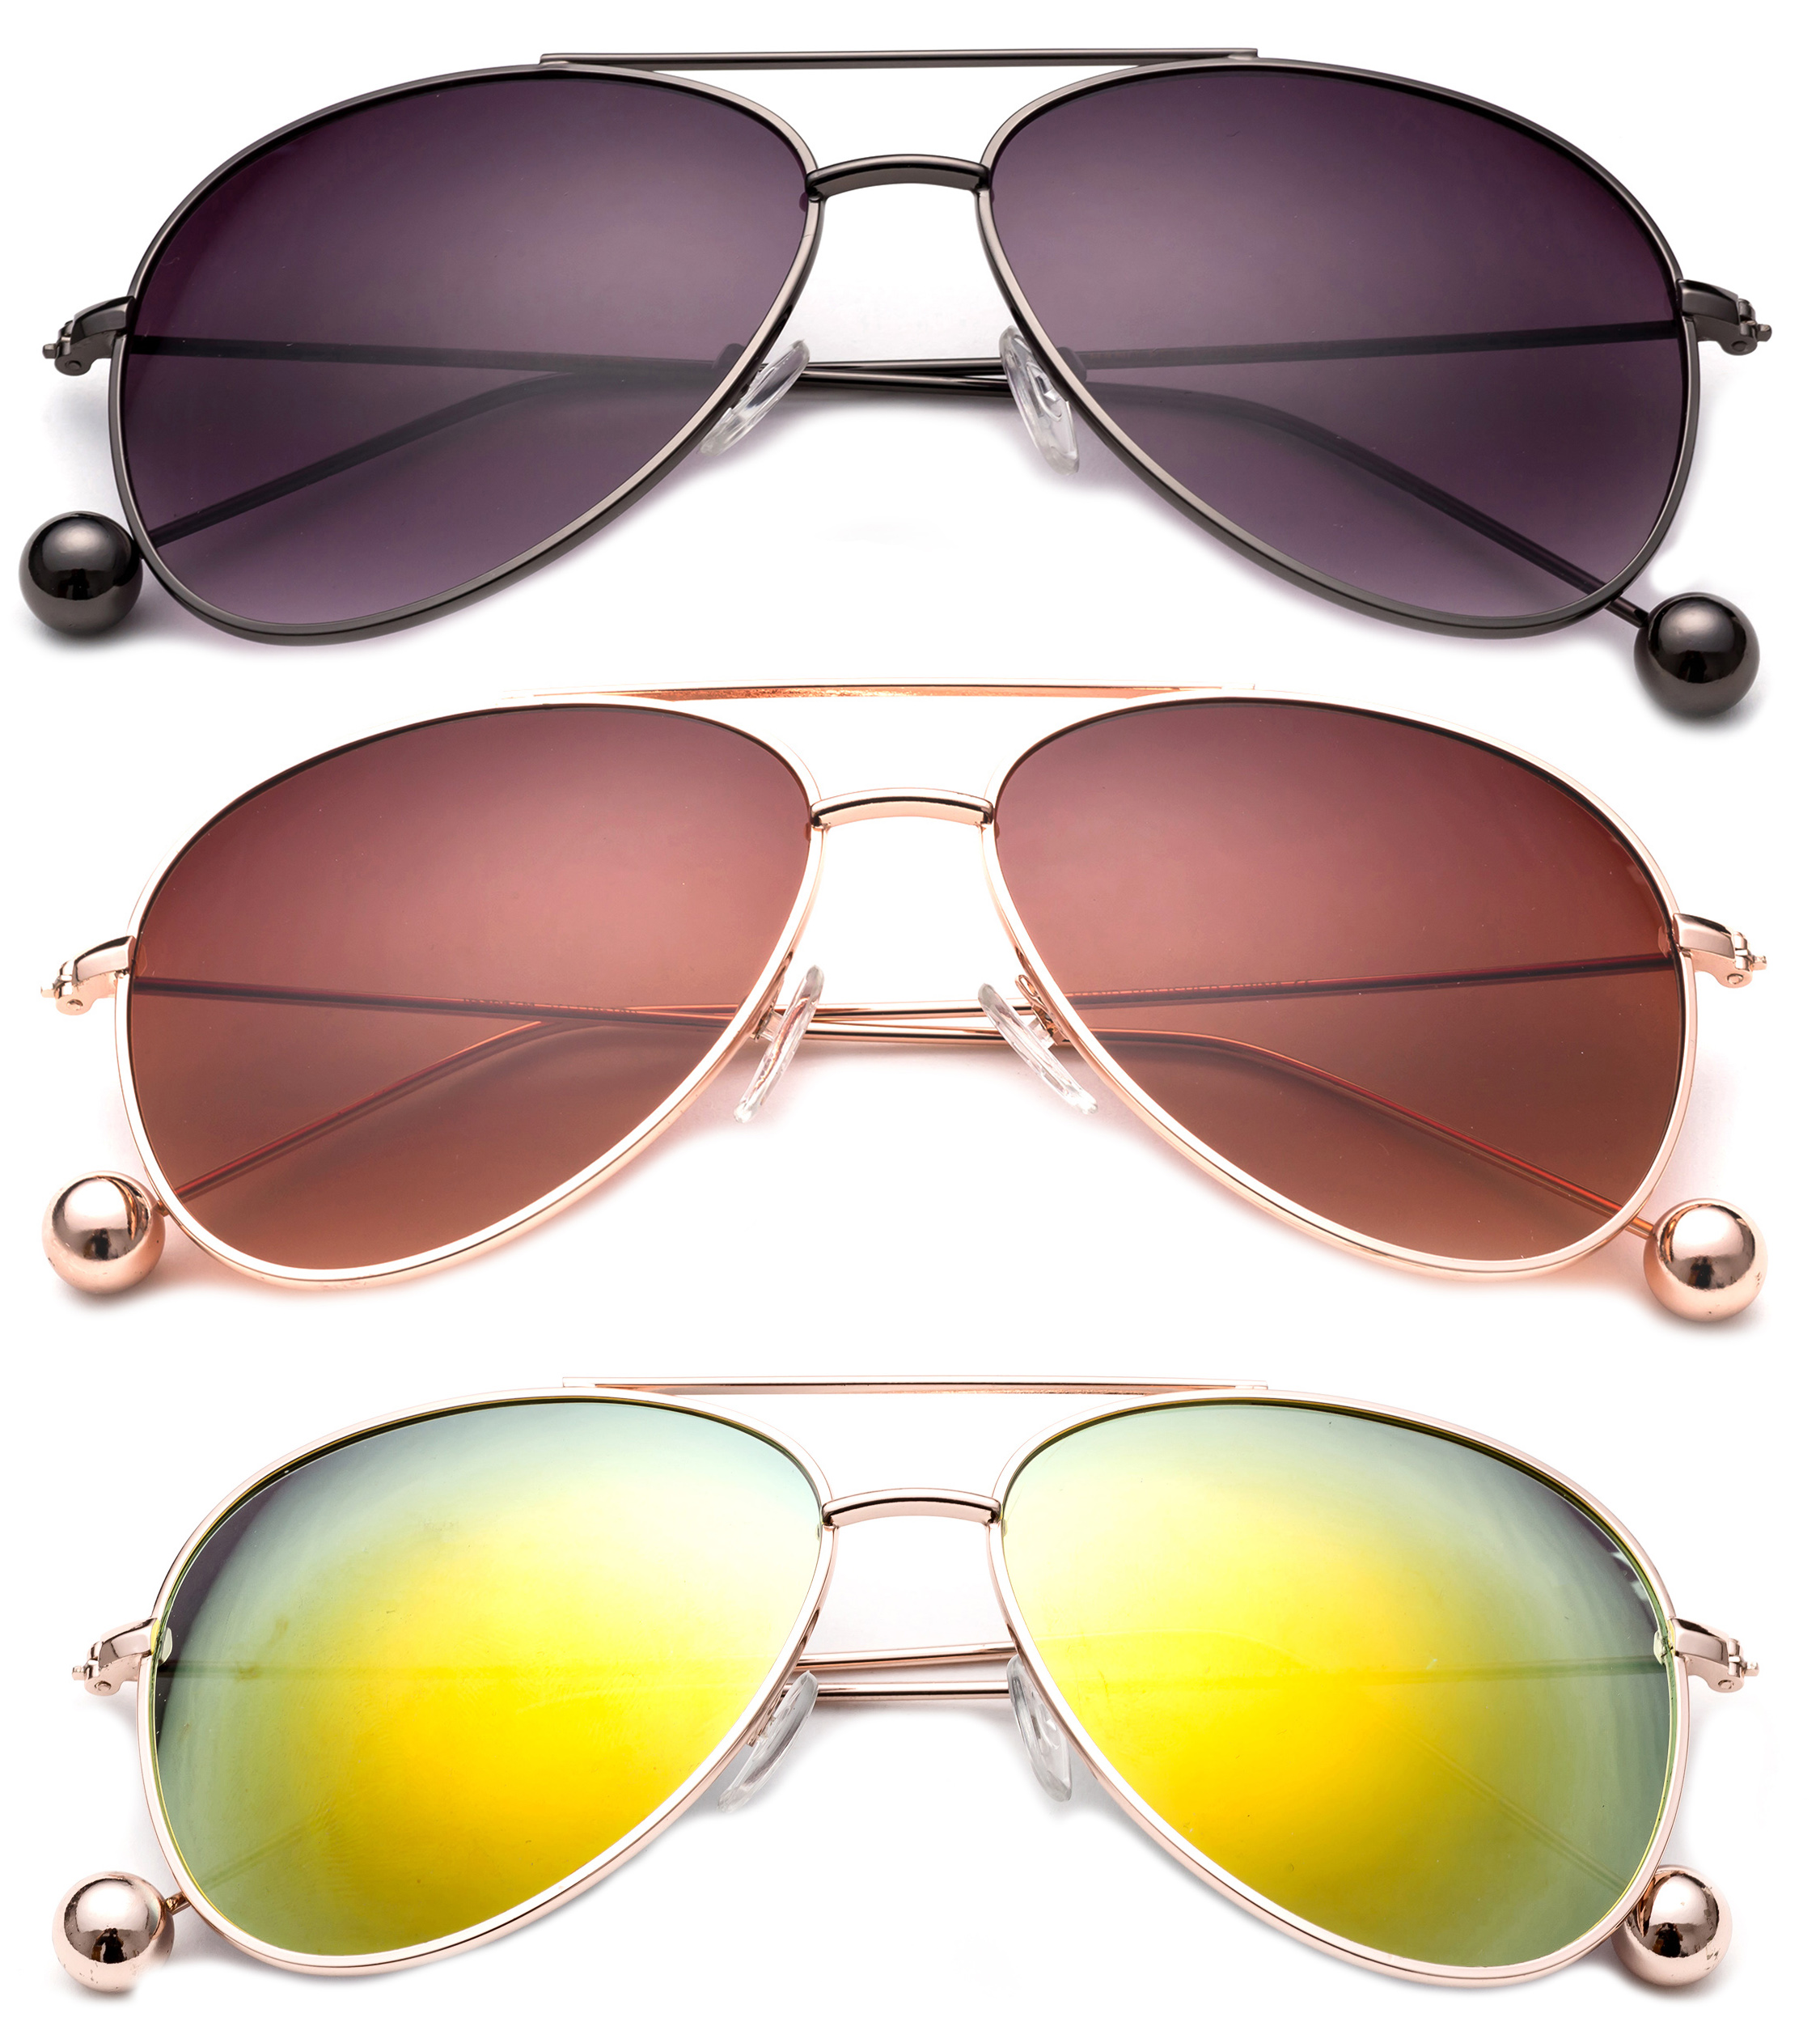 3 Pack Aviator Metal Frame Metal Ball Tip Fashion Sunglasses for Women for Men, Black Smoke, Gunmetal, Brown & Orange - image 1 of 2